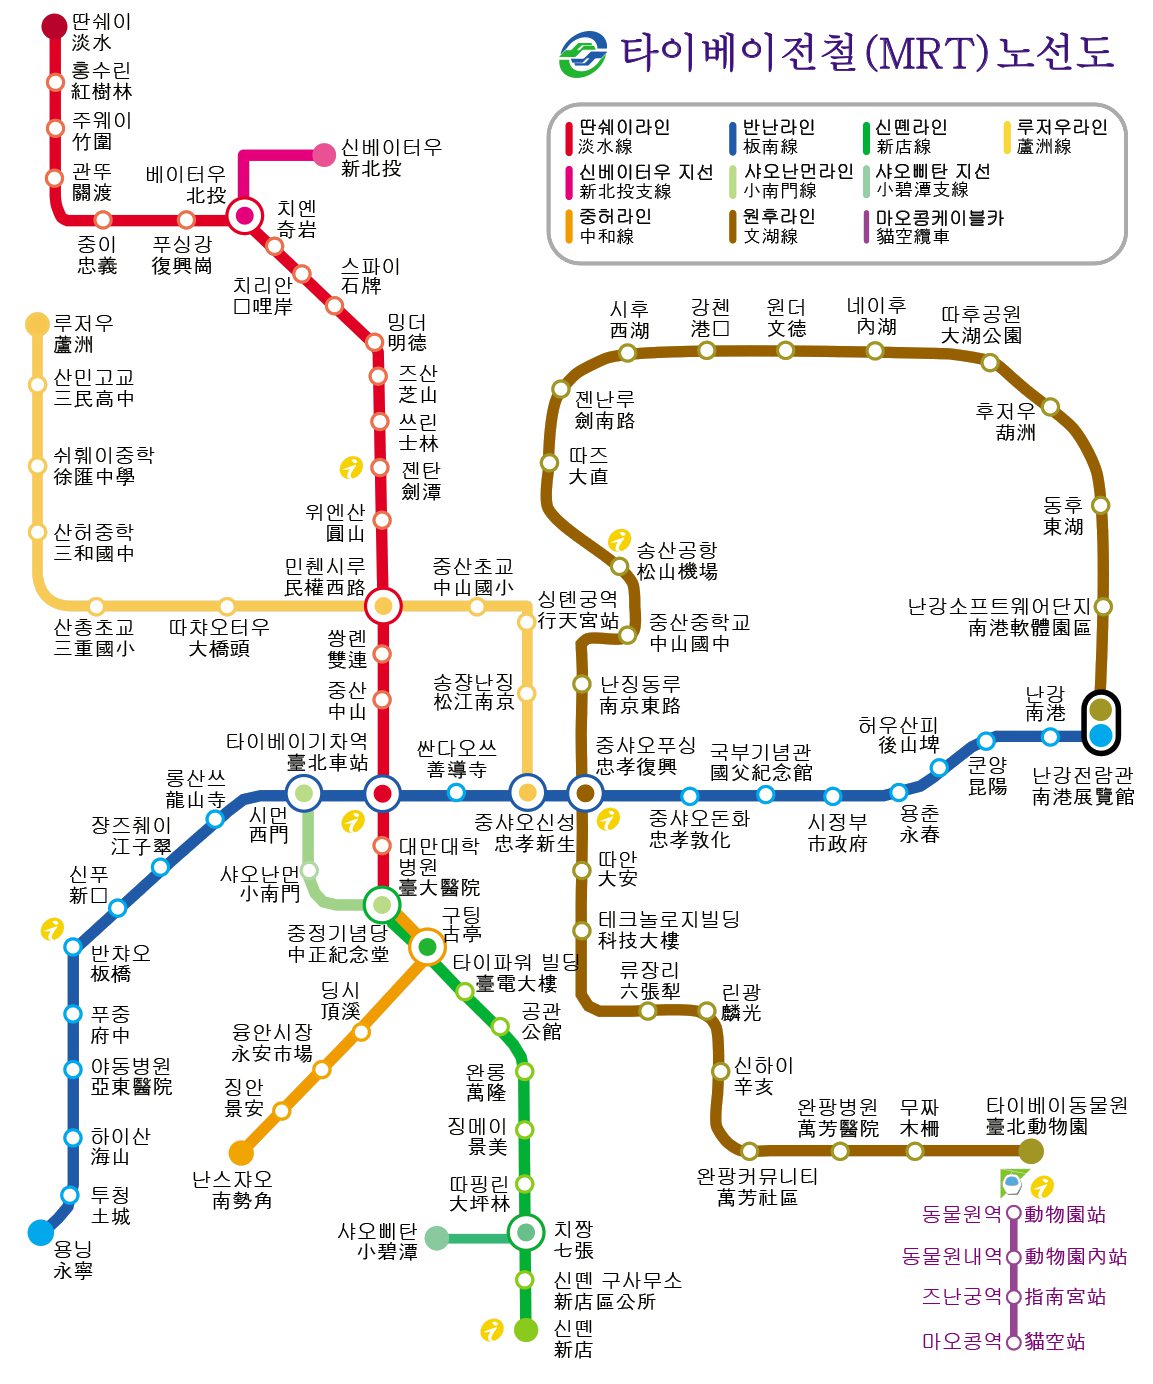 타이페이 지하철 한글, 중국어 노선도 이전 버젼 <br />(클릭하여 확대 및 드래그 가능)